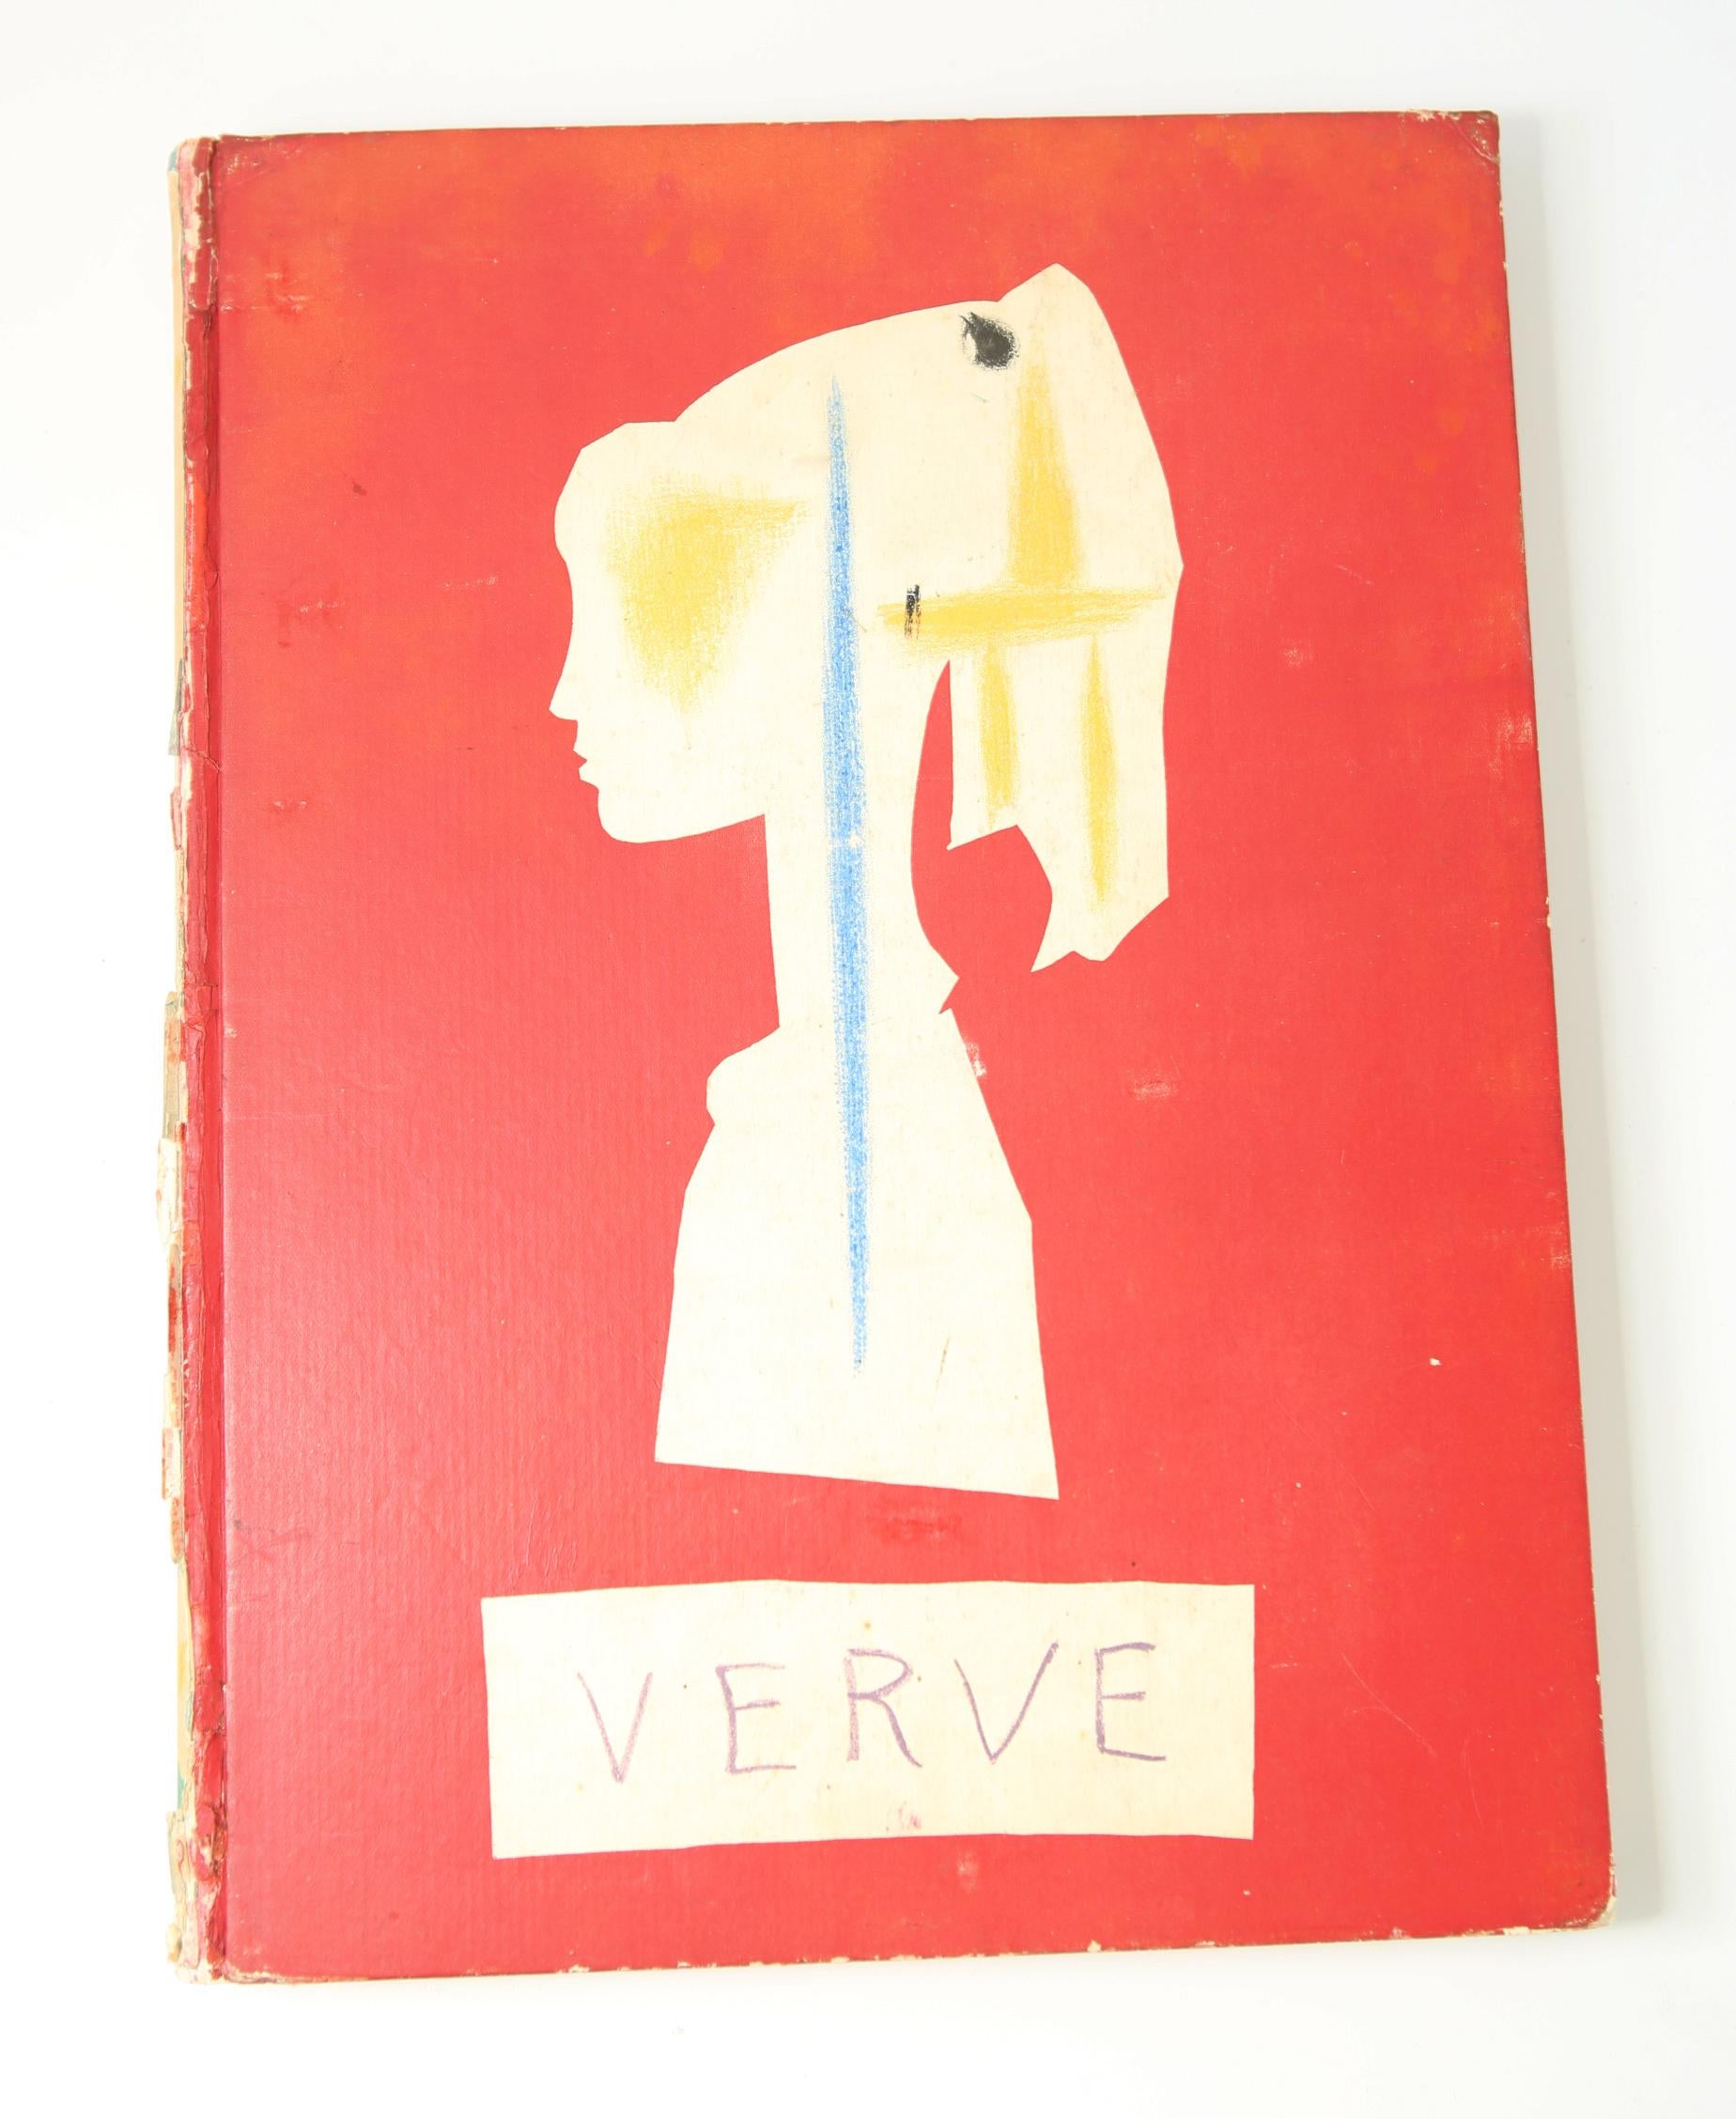 Verve 29/30,  Suite de 180 Dessins de Picasso. Nov. 28, 1953-Feb 3, 1954 - Art by (after) Pablo Picasso